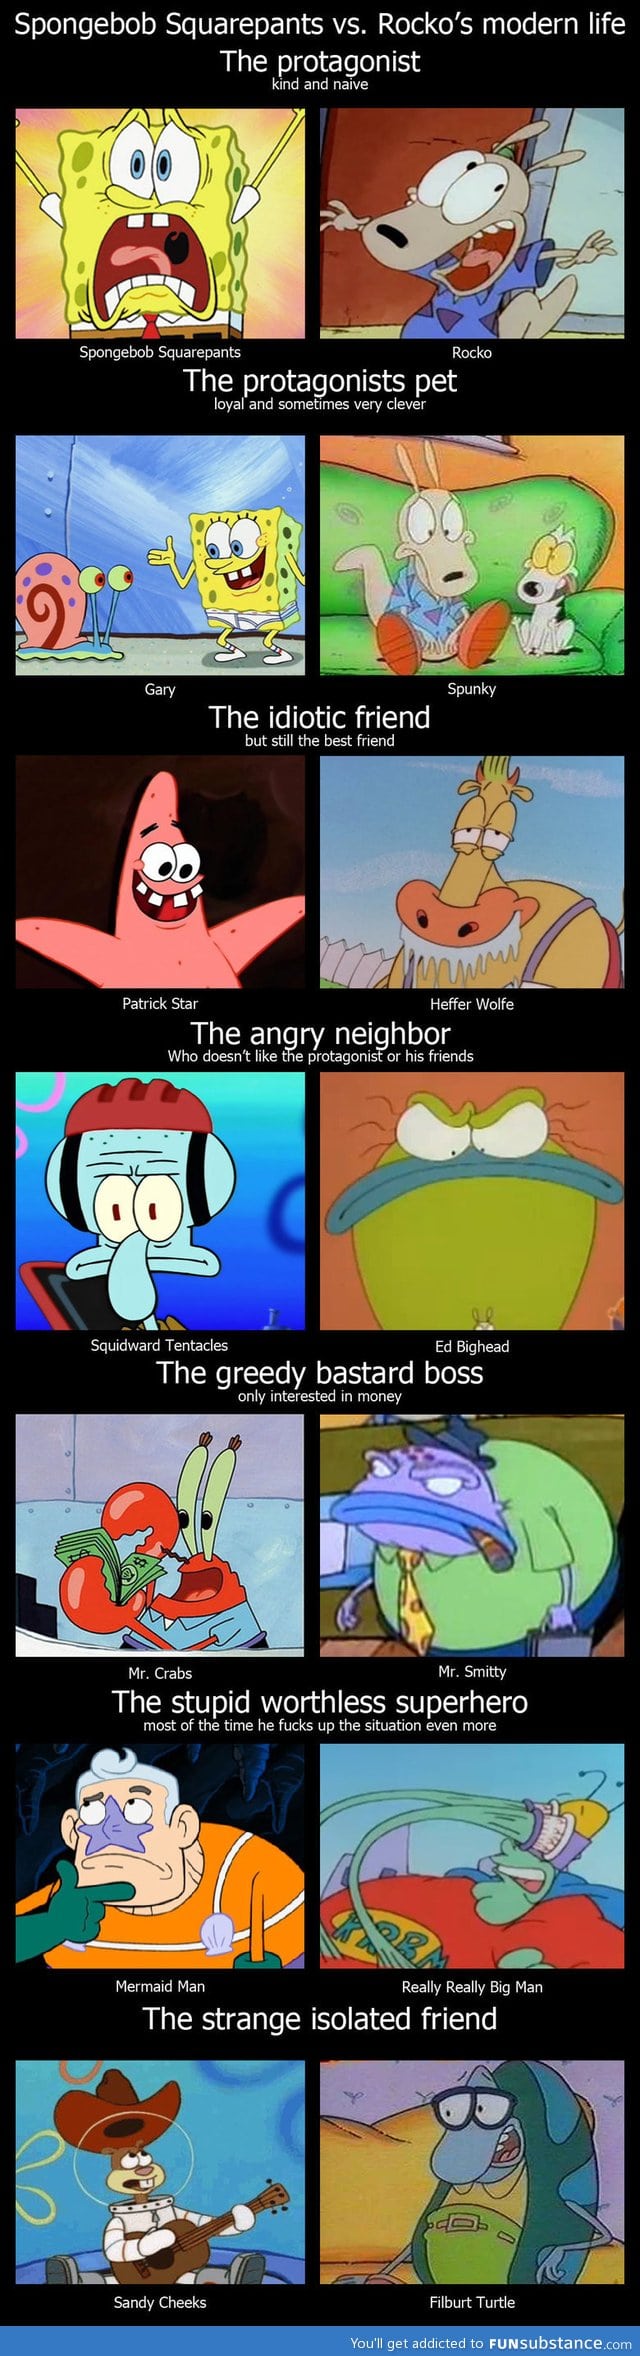 Spongebob vs. Rocko's Modern Life